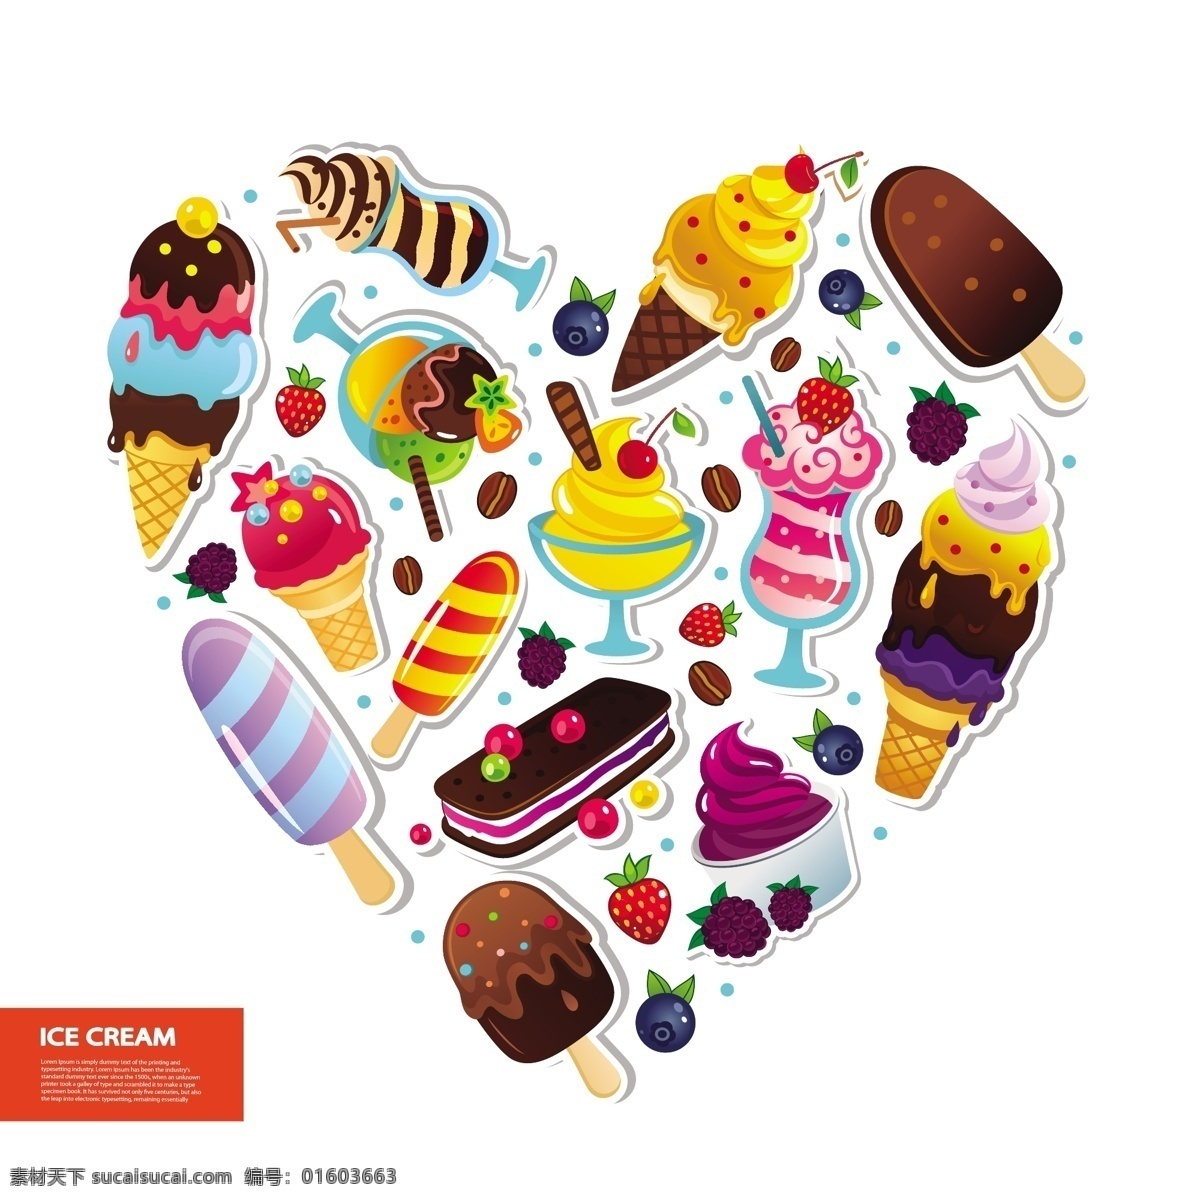 冰激凌 雪糕 组成 爱心 矢量 模板下载 心形 食物 美食 卡通 甜点 餐饮美食 生活百科 矢量素材 白色